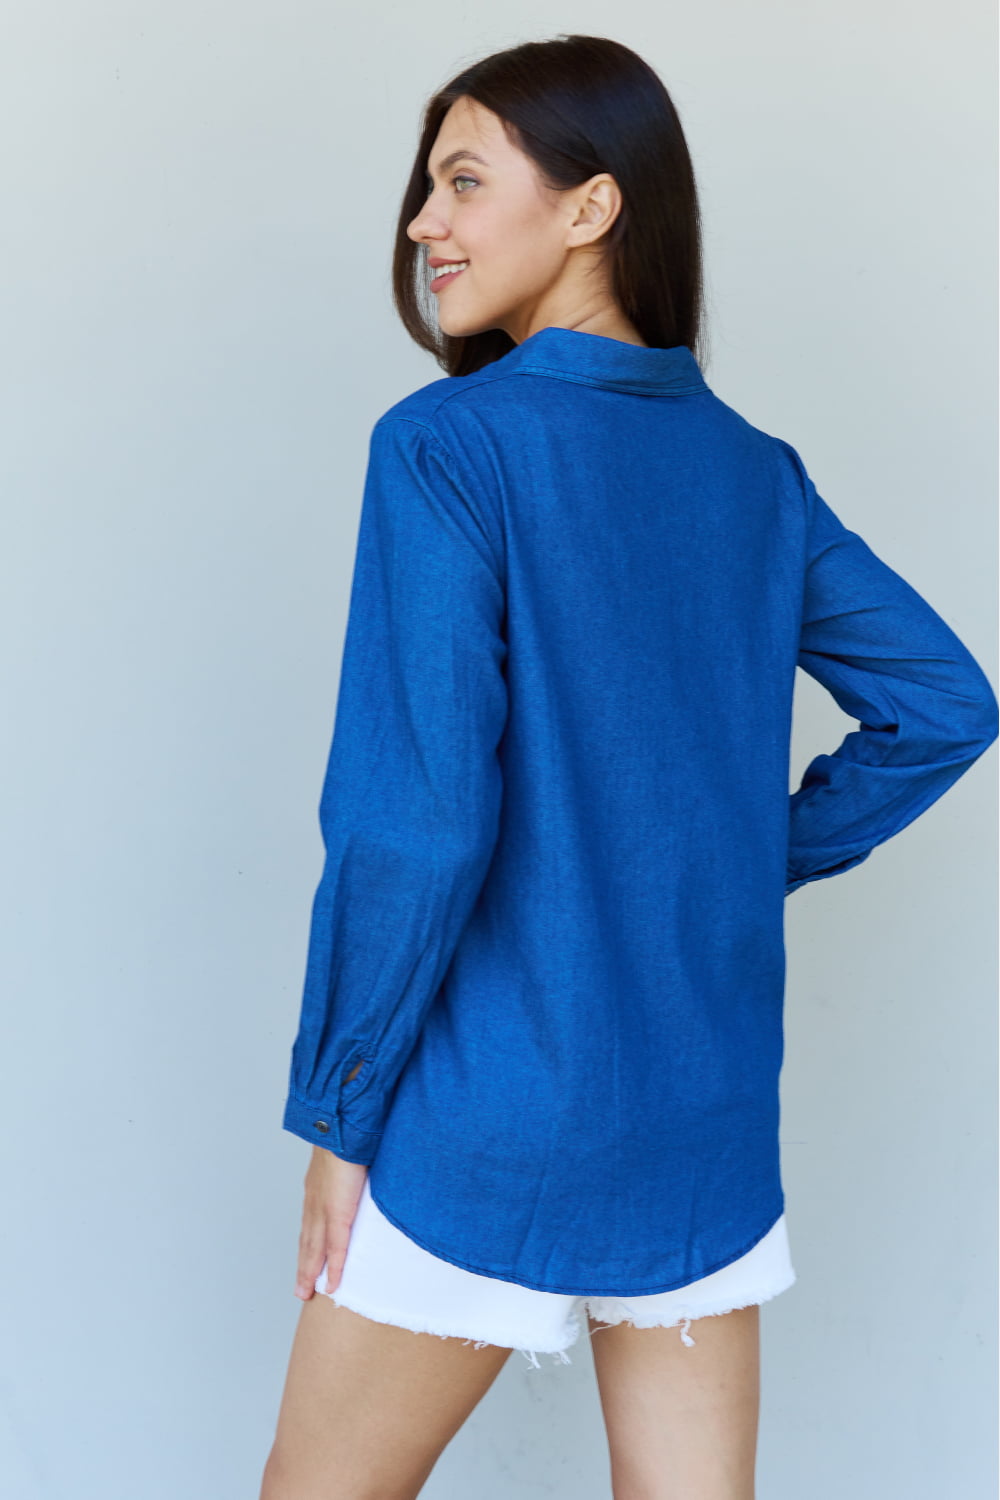 Doublju Blue Jean Baby Denim Button Down Shirt Top in Dark Blue - Tigbul's Fashion